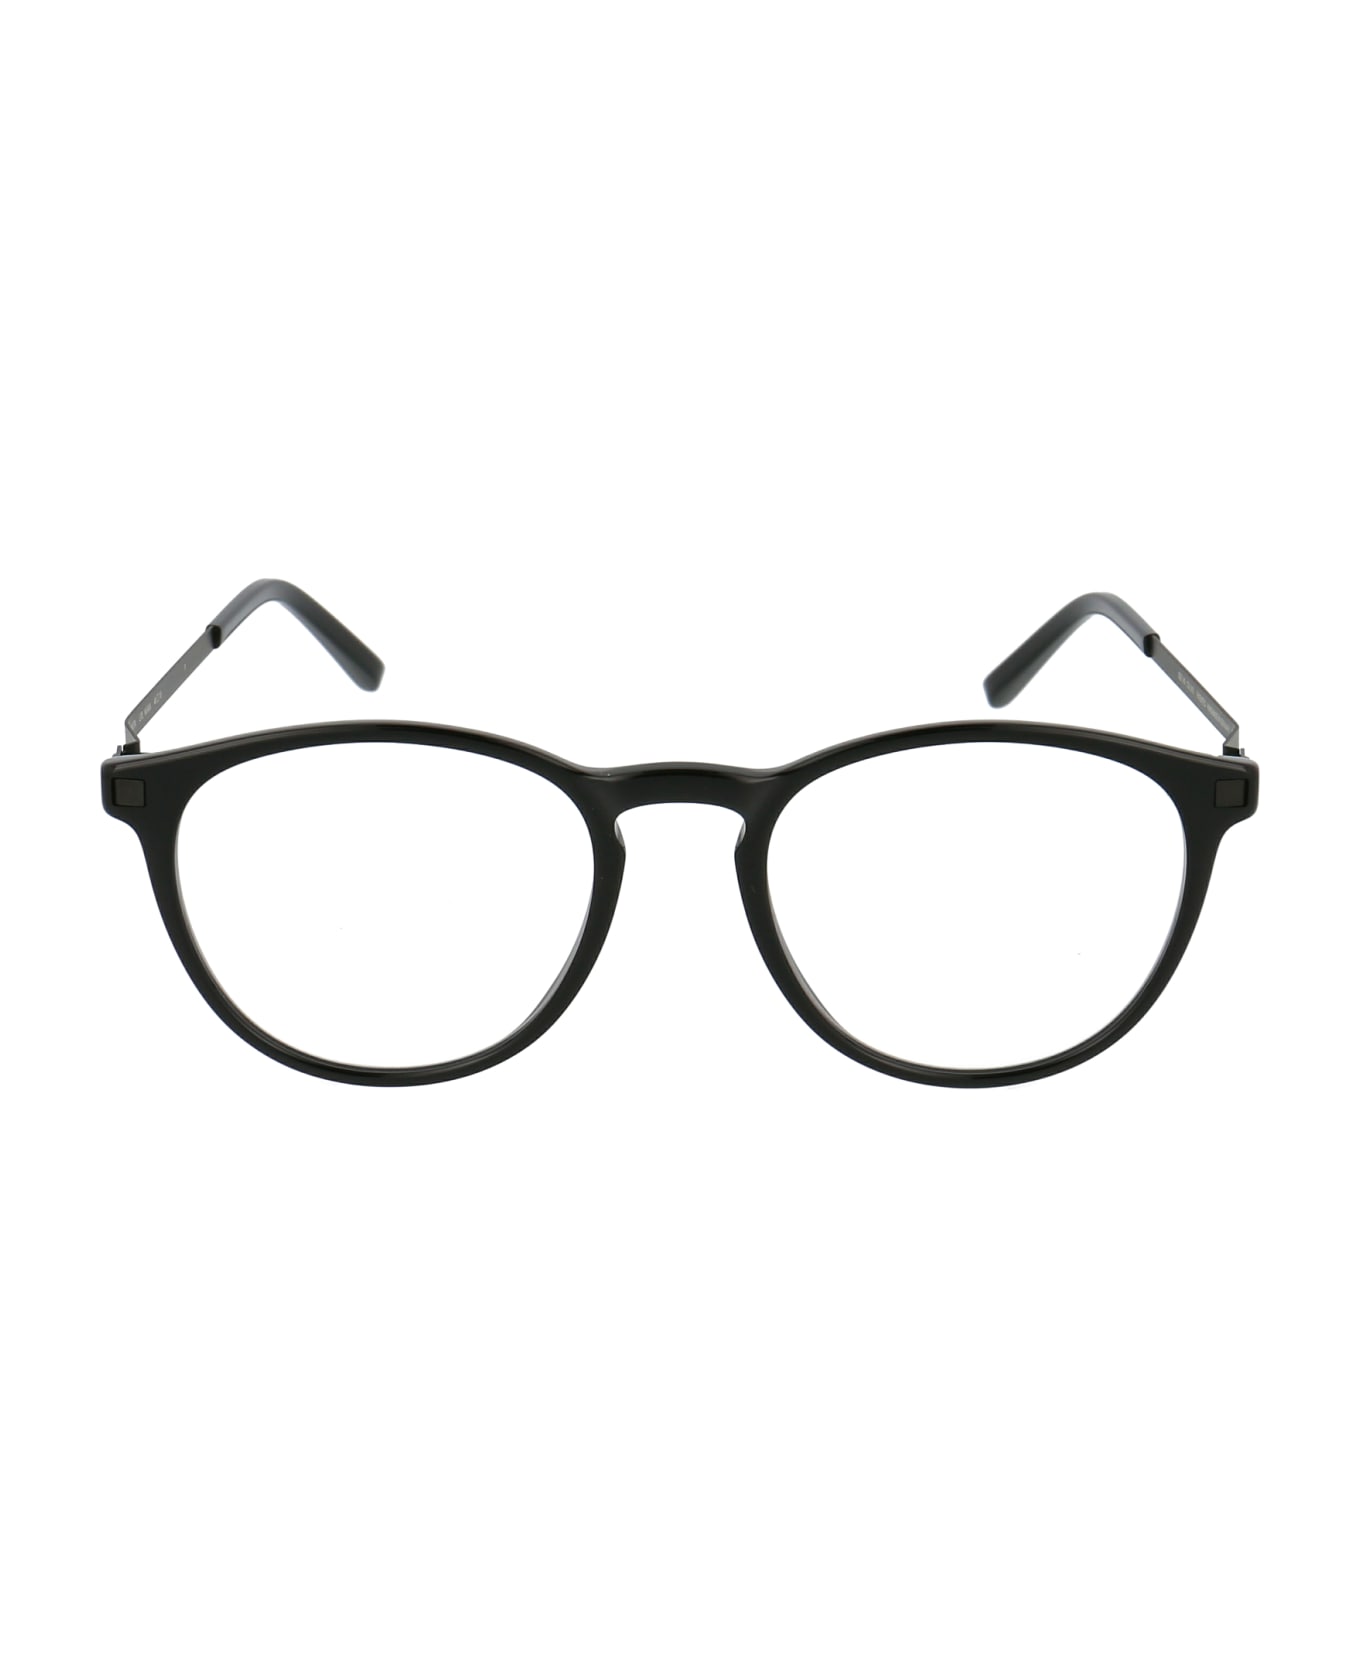 Mykita Nukka Glasses - 915 C2-Black/Black Clear アイウェア